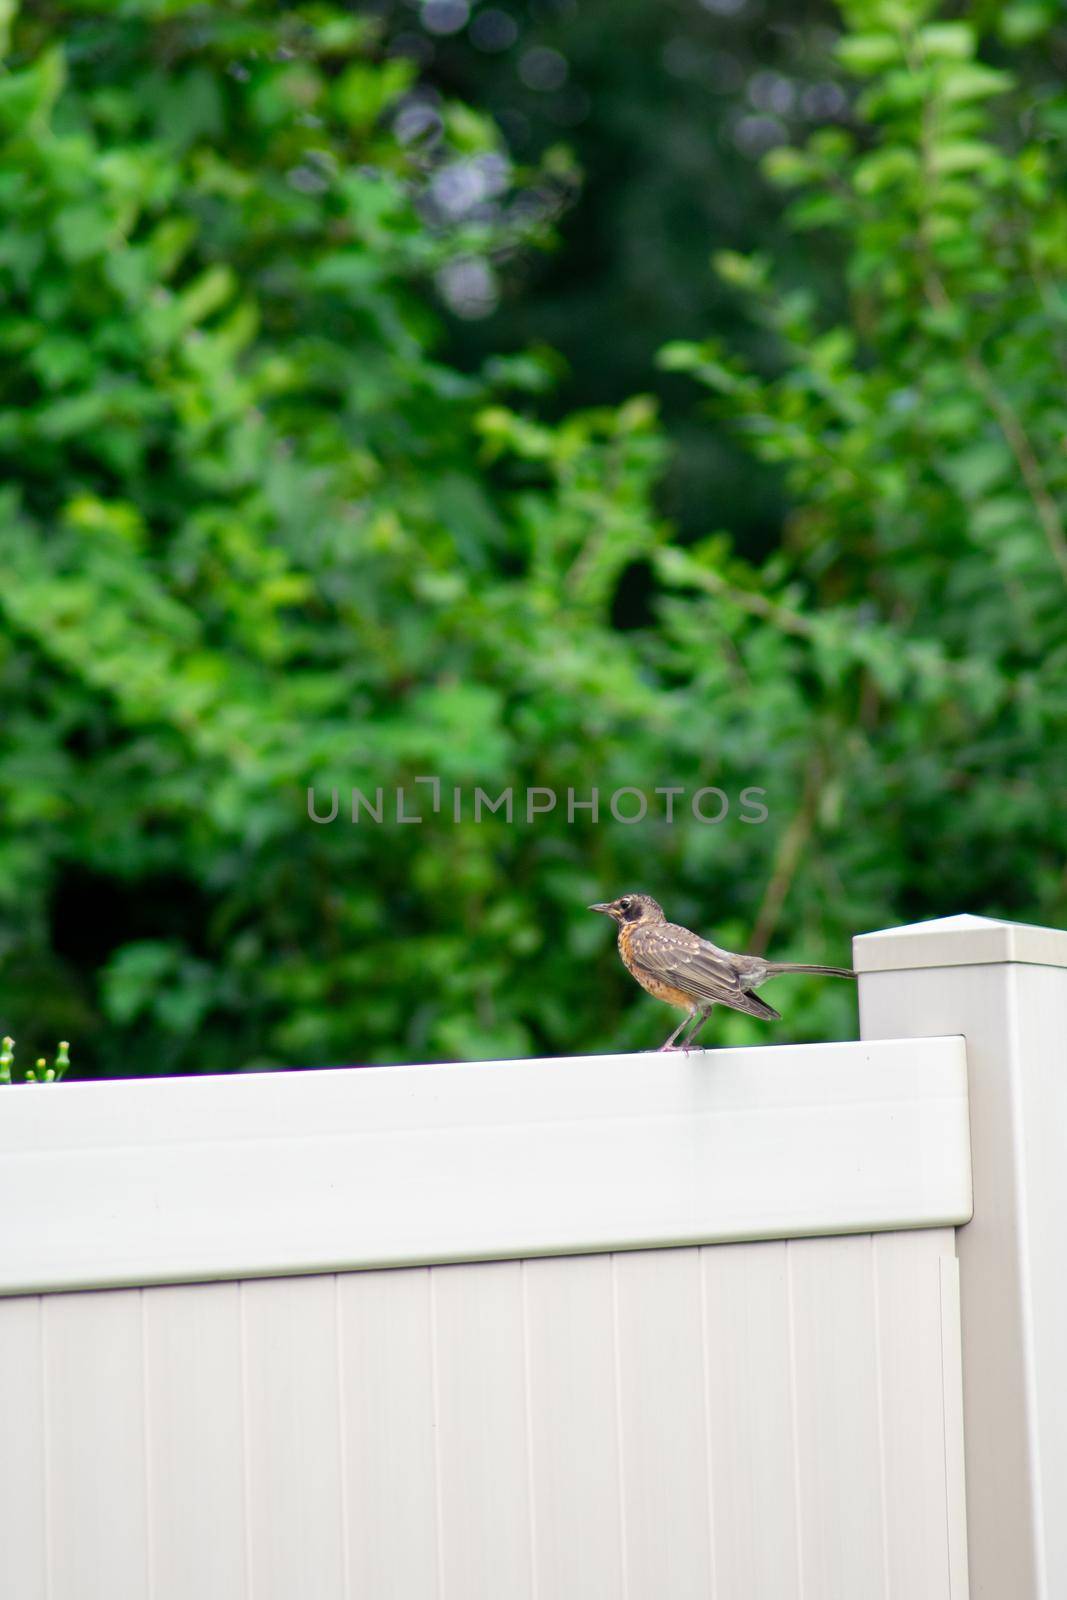 A Bird on a Tan Fence in a Backyard in Suburban Pennsylvania